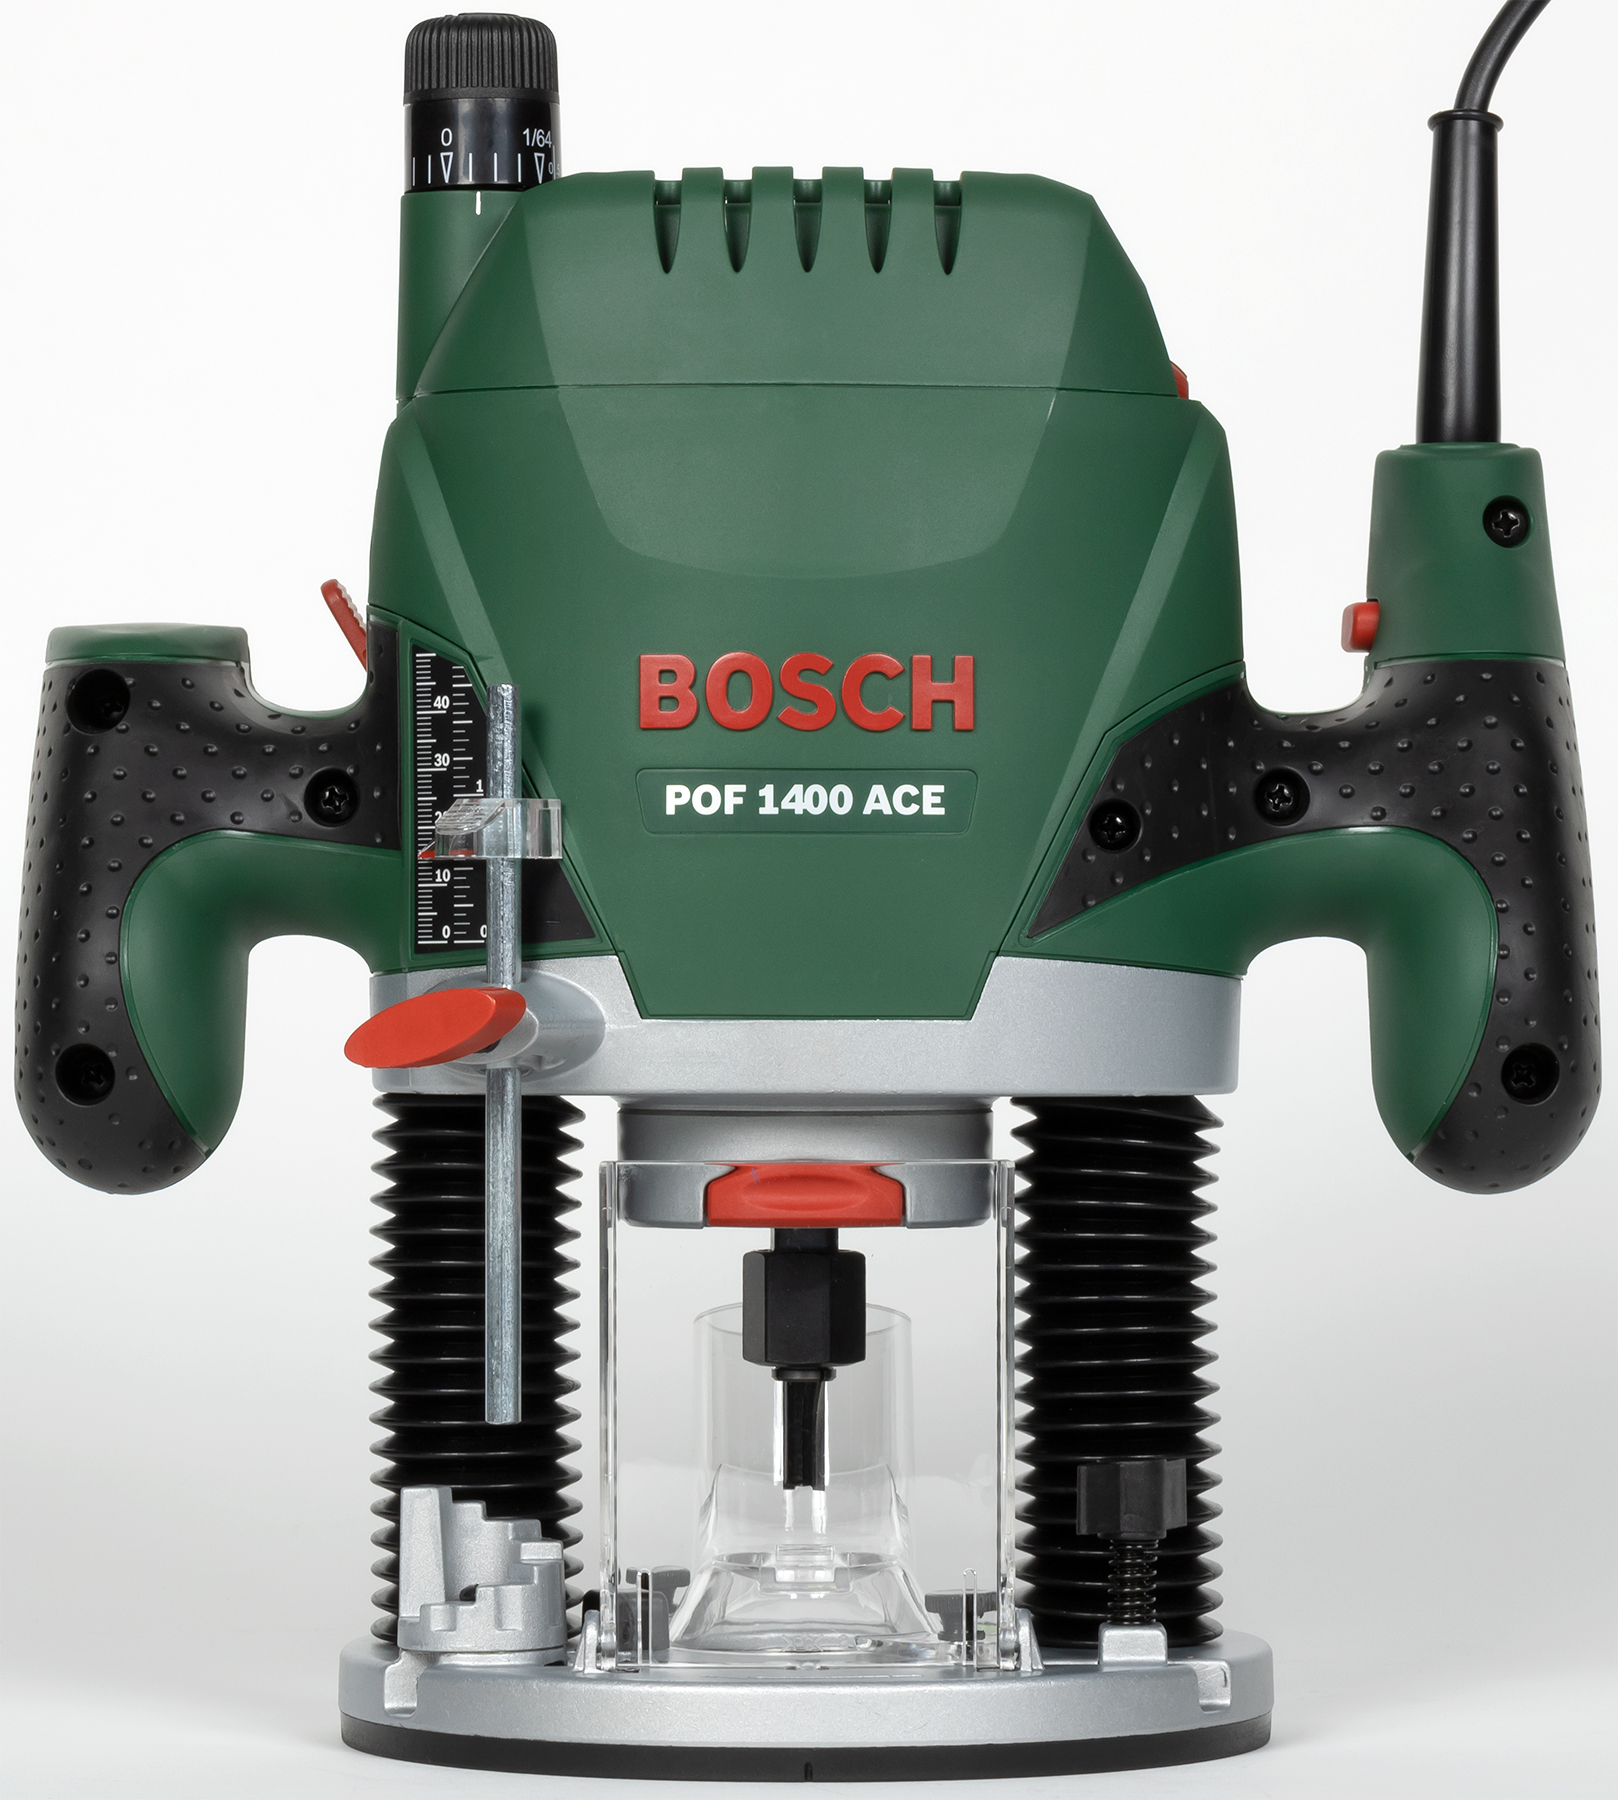 Pof 1400 купить. Bosch POF 1400 Ace. POF 1400 Ace. Фрезер Bosch POF 1400. Bosch POF 1400 Ace комплектация.